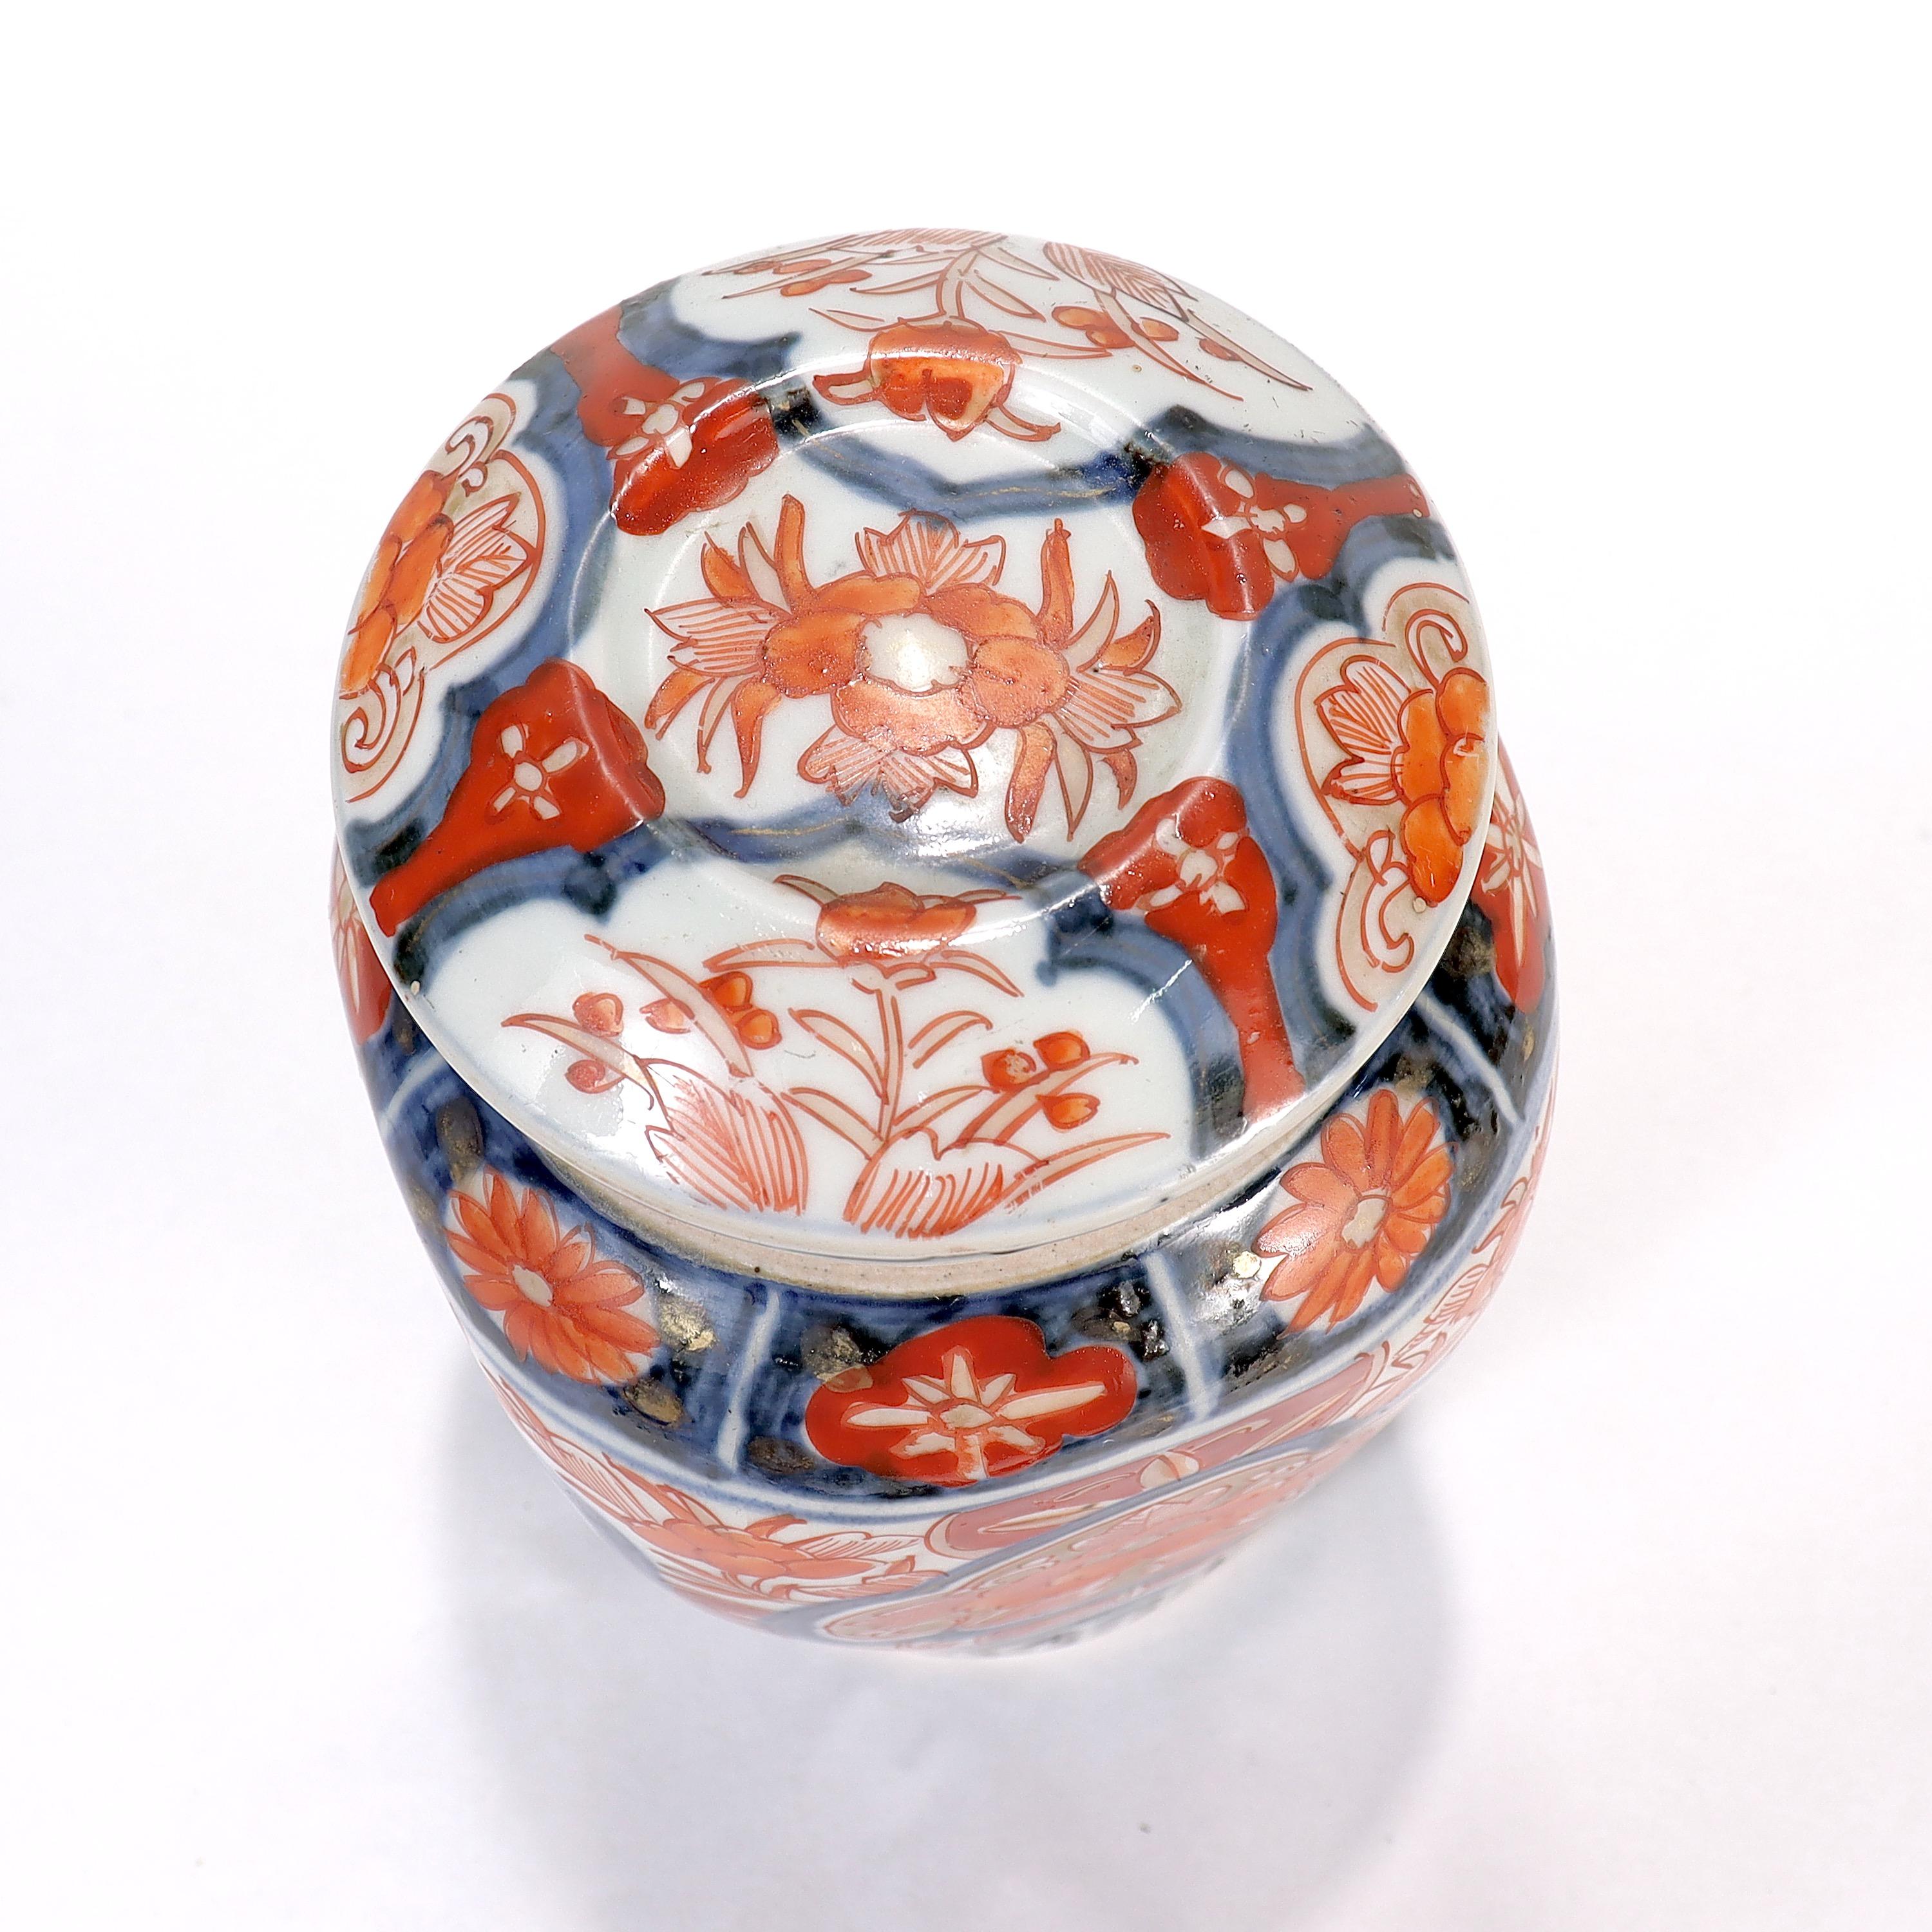 Old or Antique Japanese Imari Porcelain Covered Jar or Urn For Sale 2